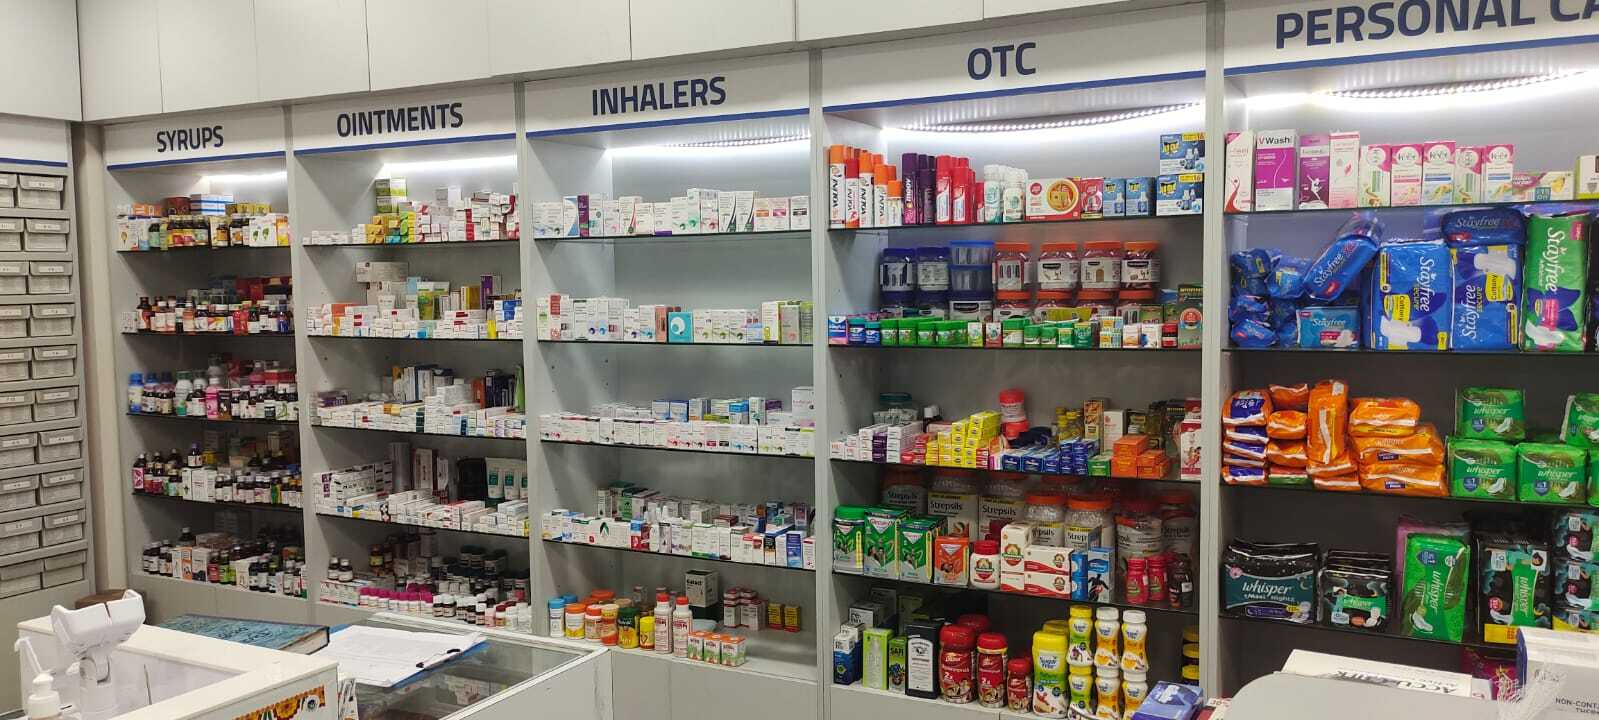 Aster Pharmacy in Yelahanka New Town, Bangalore